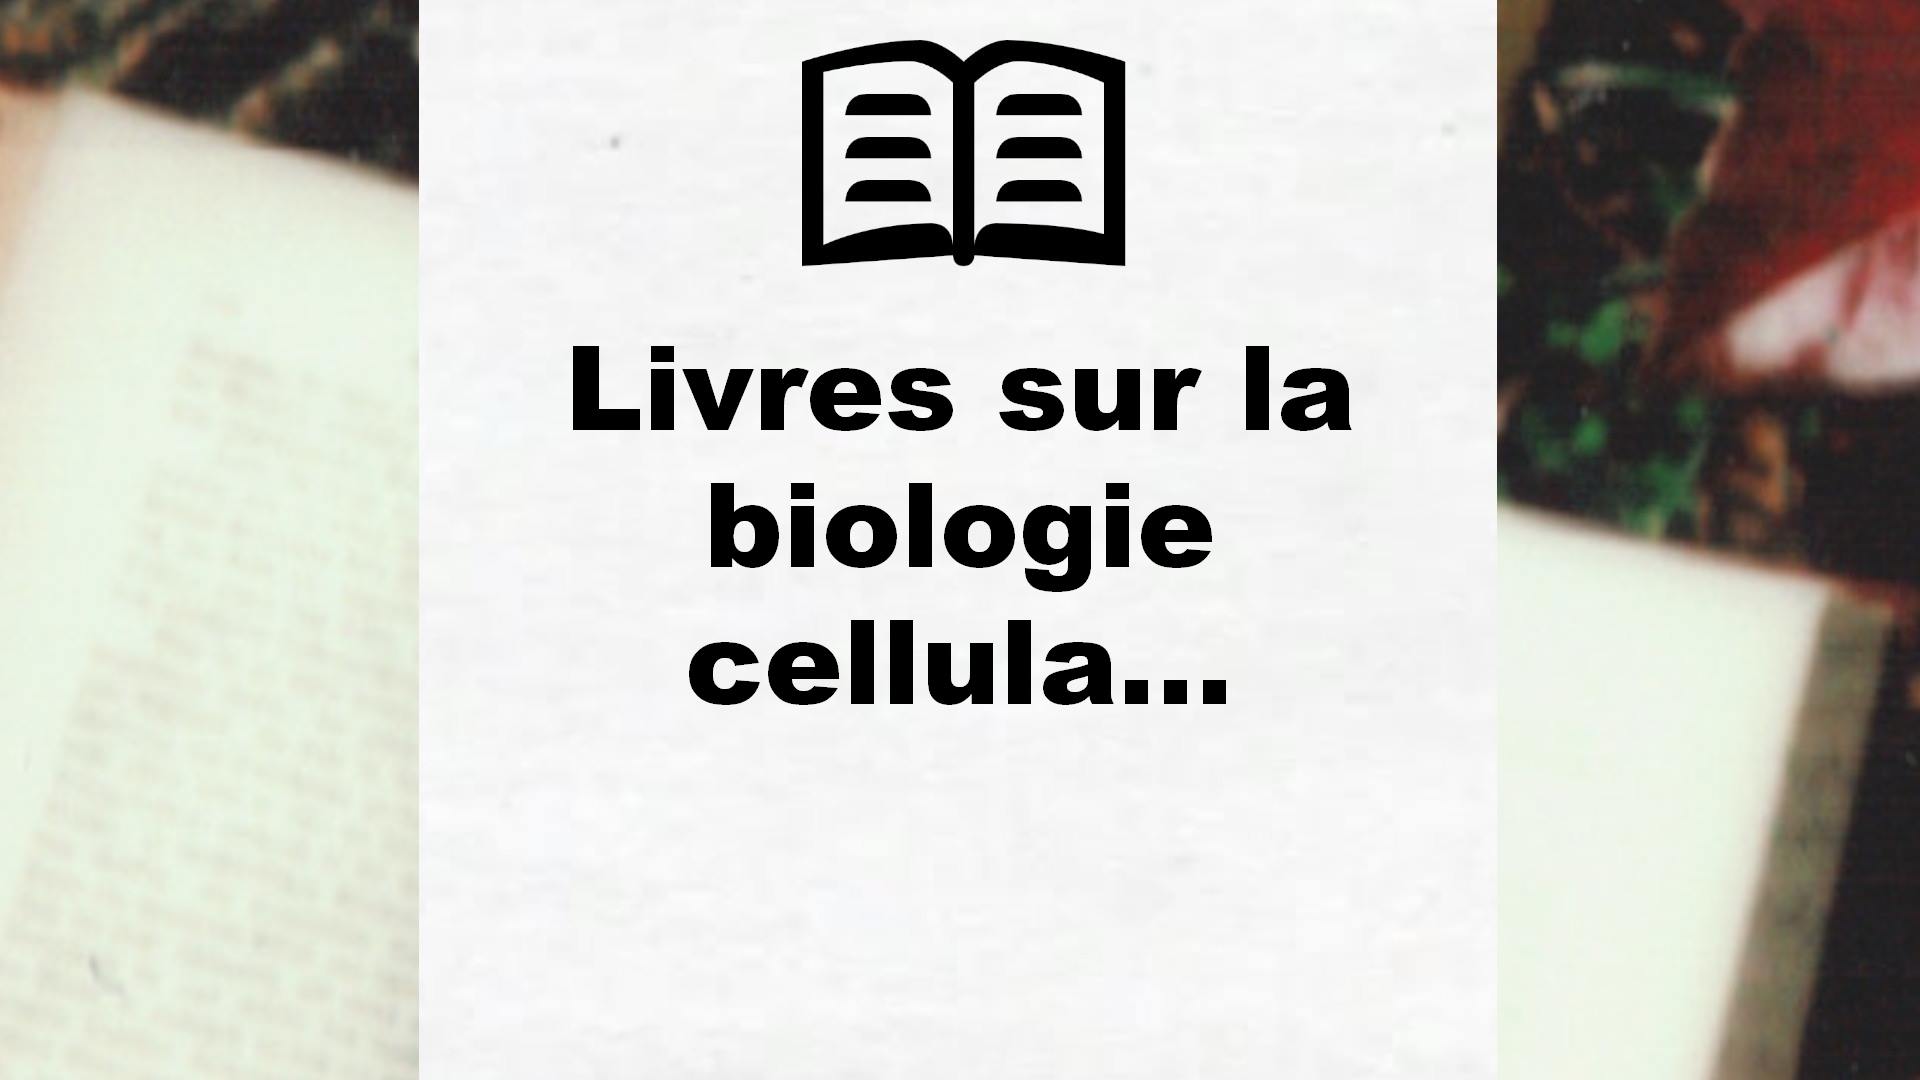 Livres sur la biologie cellulaire